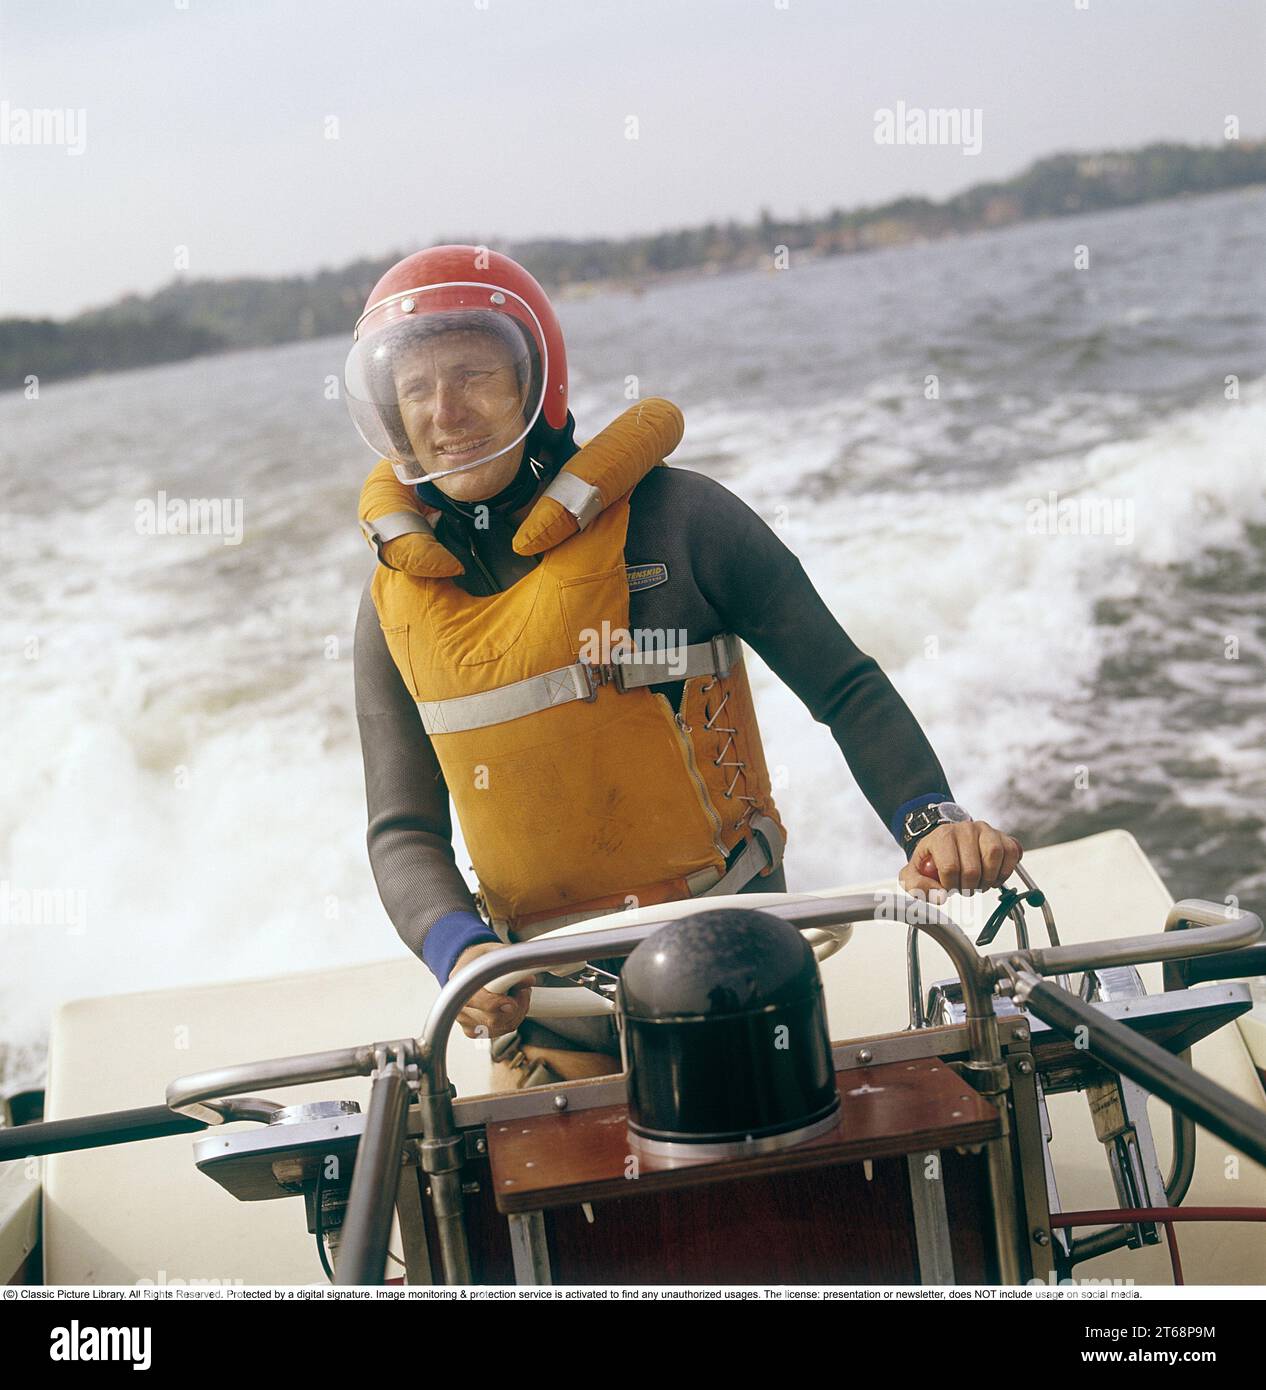 In den 1960er Jahren Ein Mann, der ein Motorboot fährt, gekleidet in einem Taucheranzug, einer Rettungsweste, einem Helm und einem Augenschutzglas. Er hat eine Hand am Lenkrad, eine am Gas. Schweden 1968. Kristoffersson Ref. DV13 Stockfoto